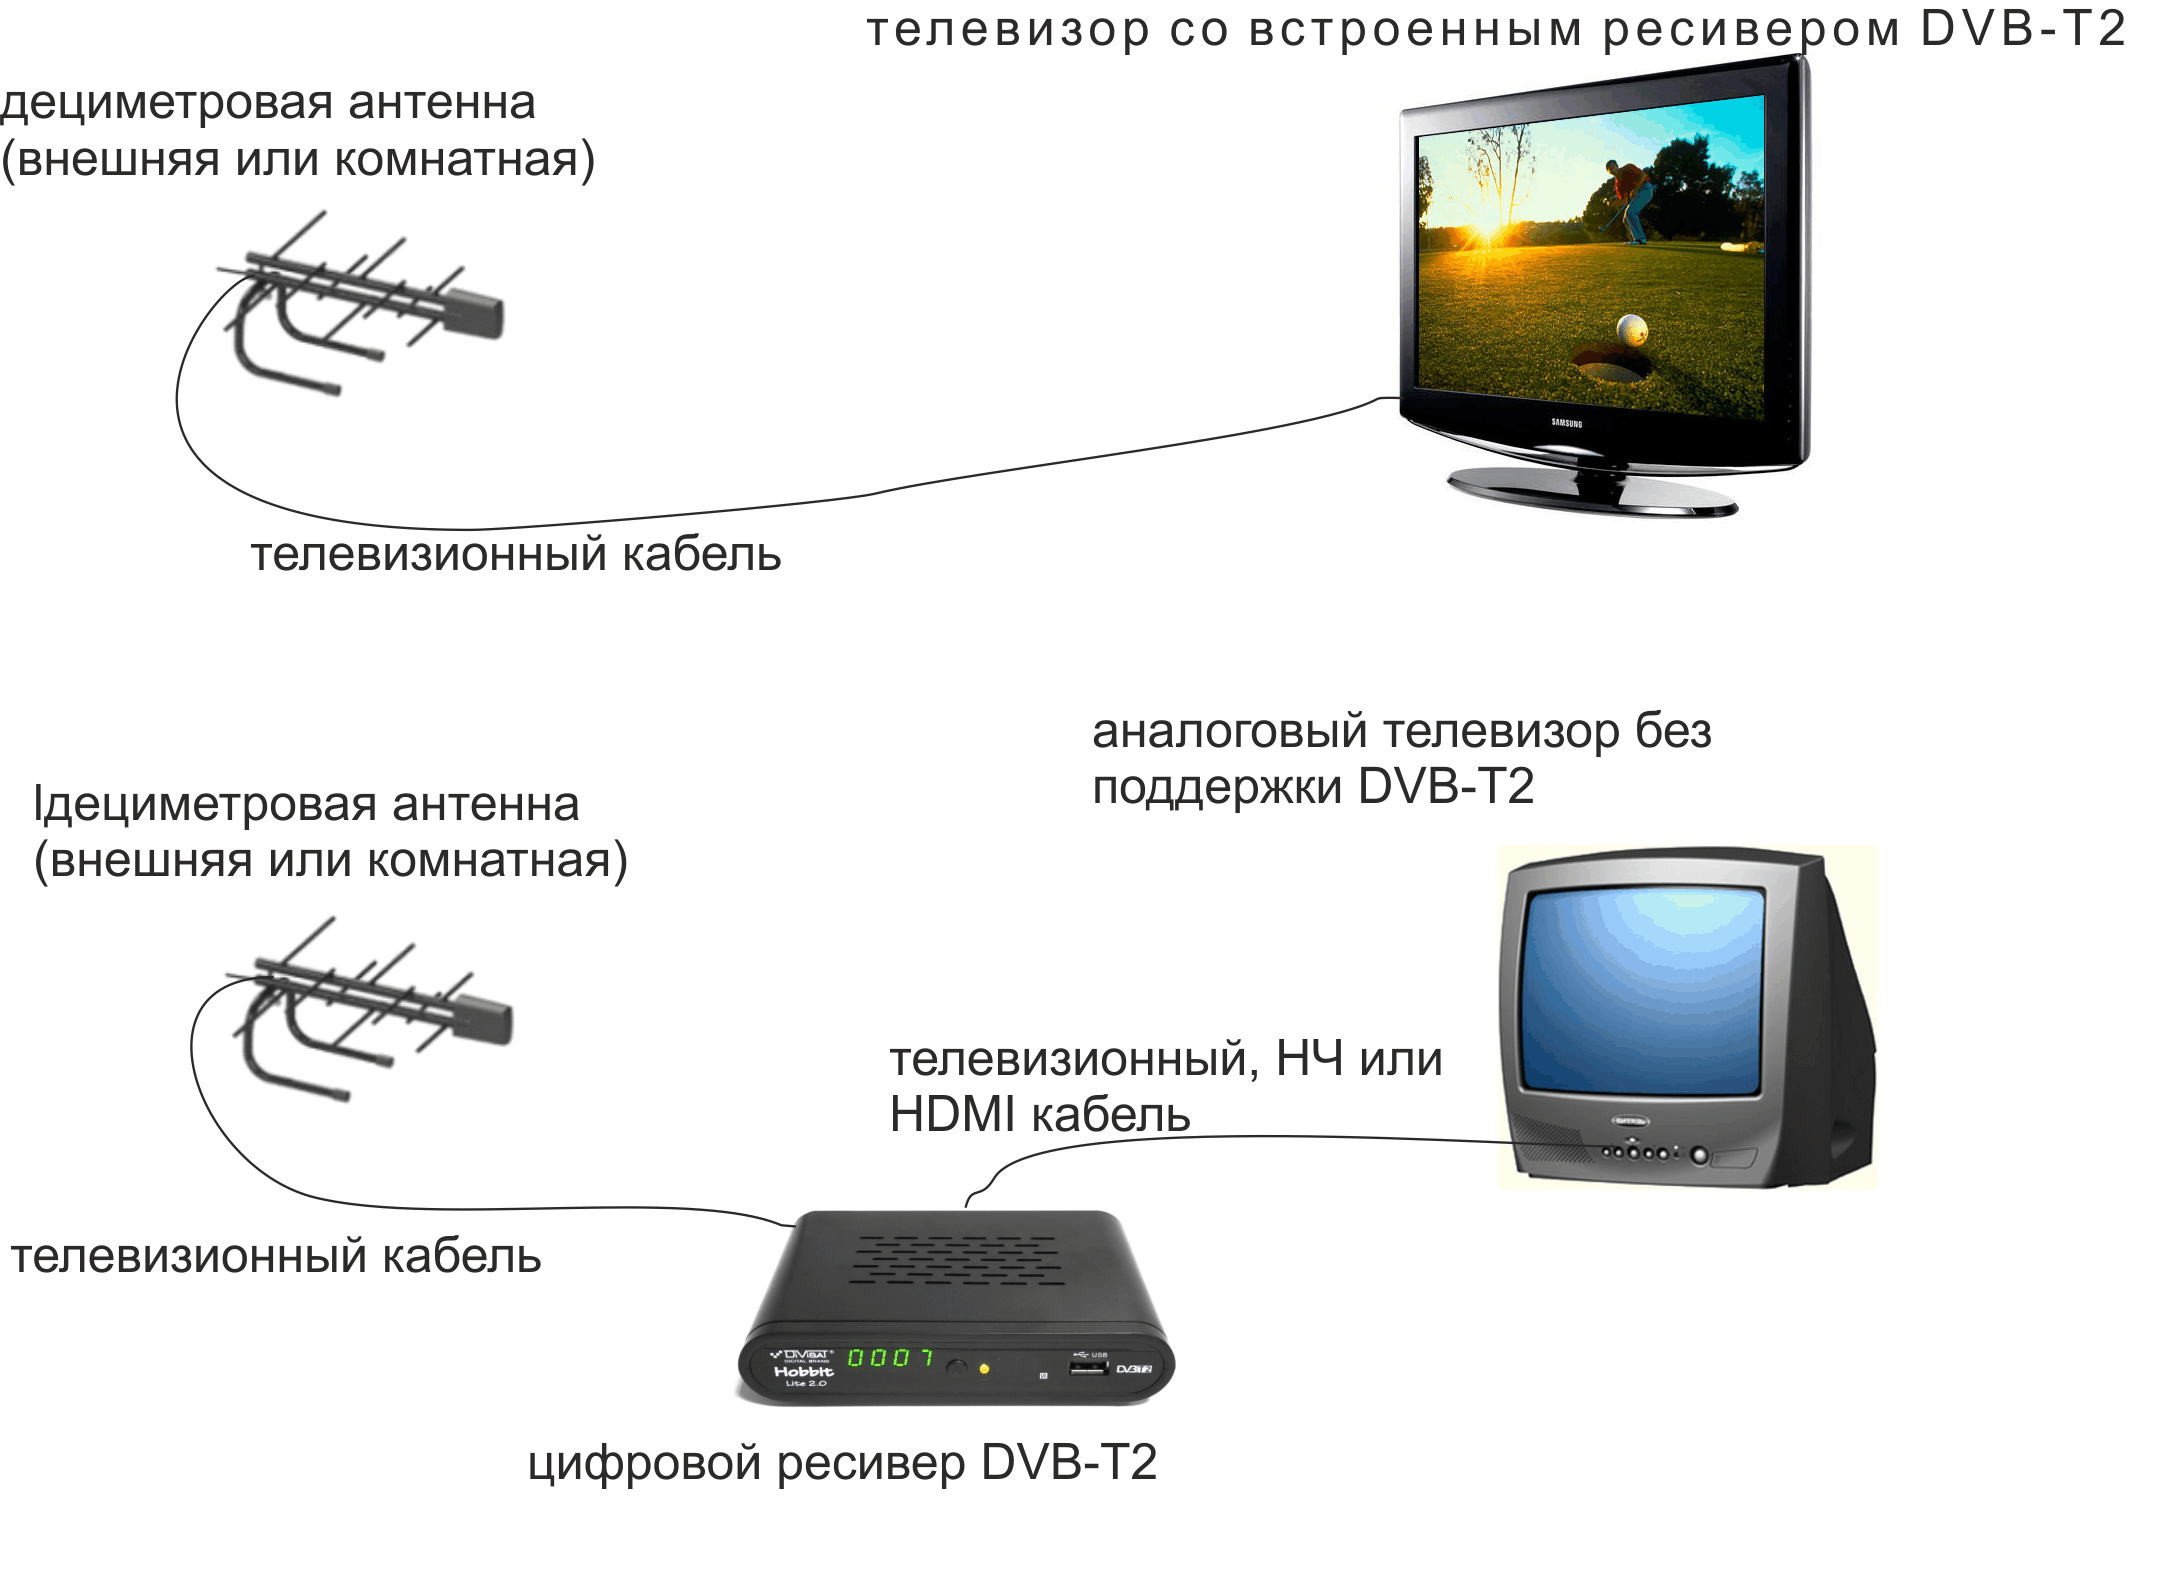 Как настроить цифровые каналы на телевизоре самсунг без приставки: можно ли смотреть тв на samsung без антенны и как произвести настройку 20 бесплатных сигналов?